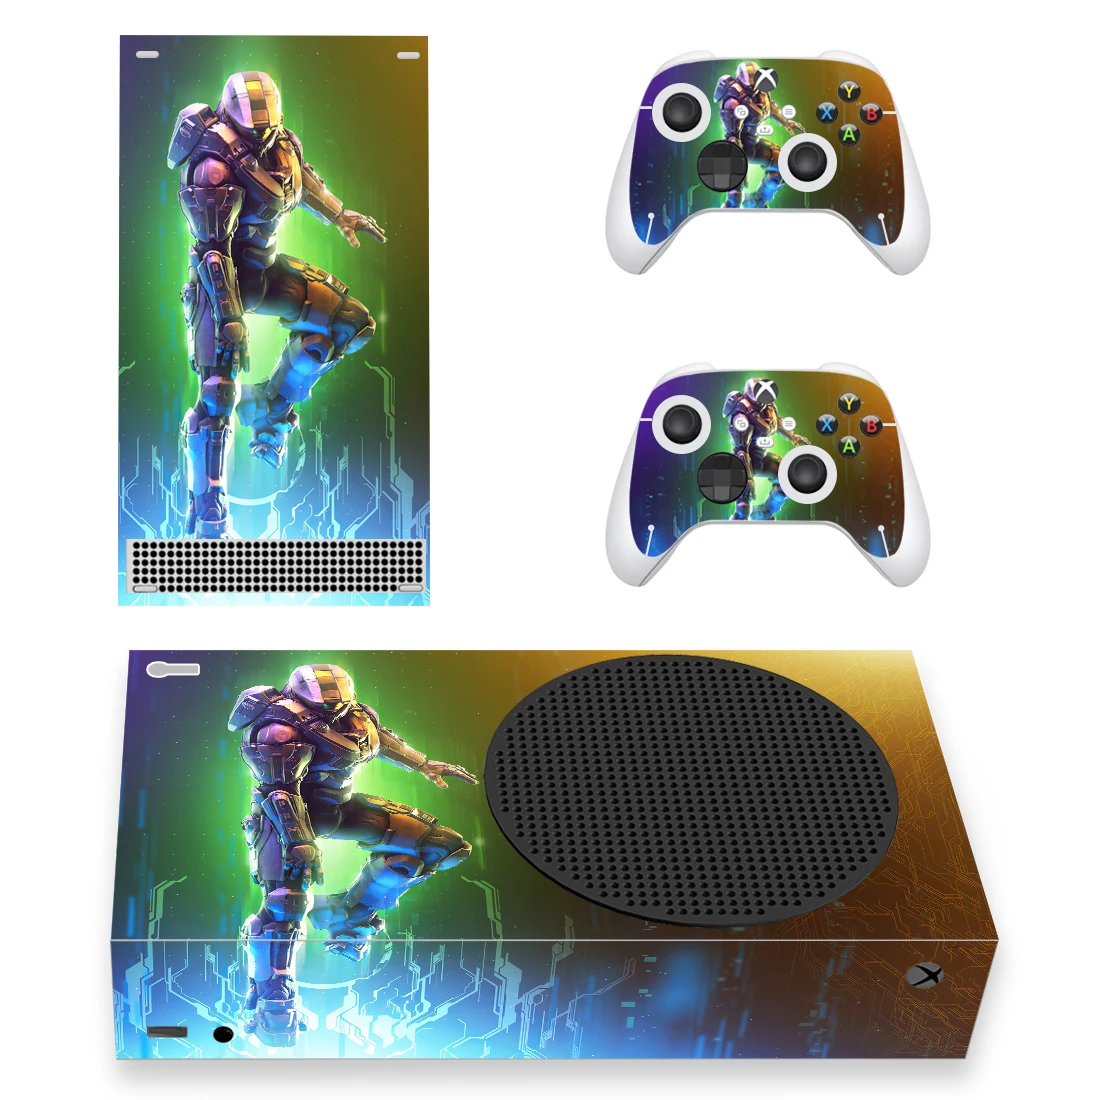 

Наклейка на заказ, Обложка для консоли Xbox серии S и 2 контроллера серии Xbox, тонкая виниловая наклейка